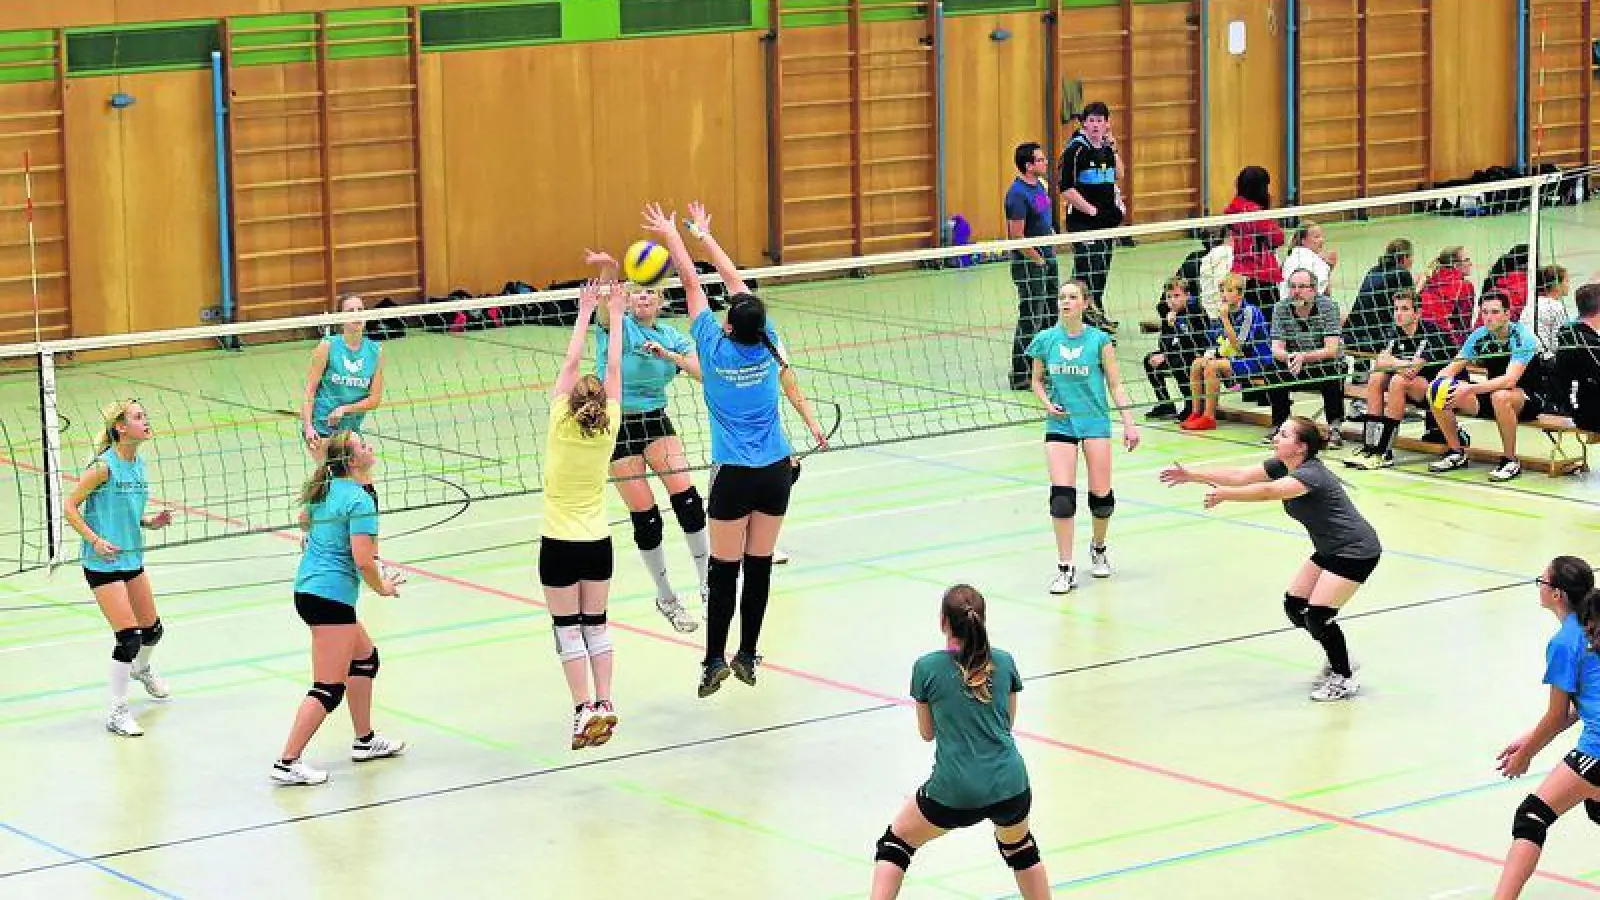 &lt;p&gt; &lt;x_bildunterschr&gt; &lt;b&gt;Die Aichacher Vierfachhalle war am Wochenende &lt;/b&gt; fest in der Hand der Volleyballer. 30 Mannschaften nahmen am traditionellen Herbstturnier teil. Bei den Damen gewann in der Leistungsklasse A der TSV Inchenhofen (hinten) das Spiel um Platz drei gegen den TSV Ebermergen.  Foto: Siegfried Kerpf &lt;/x_bildunterschr&gt; &lt;/p&gt;